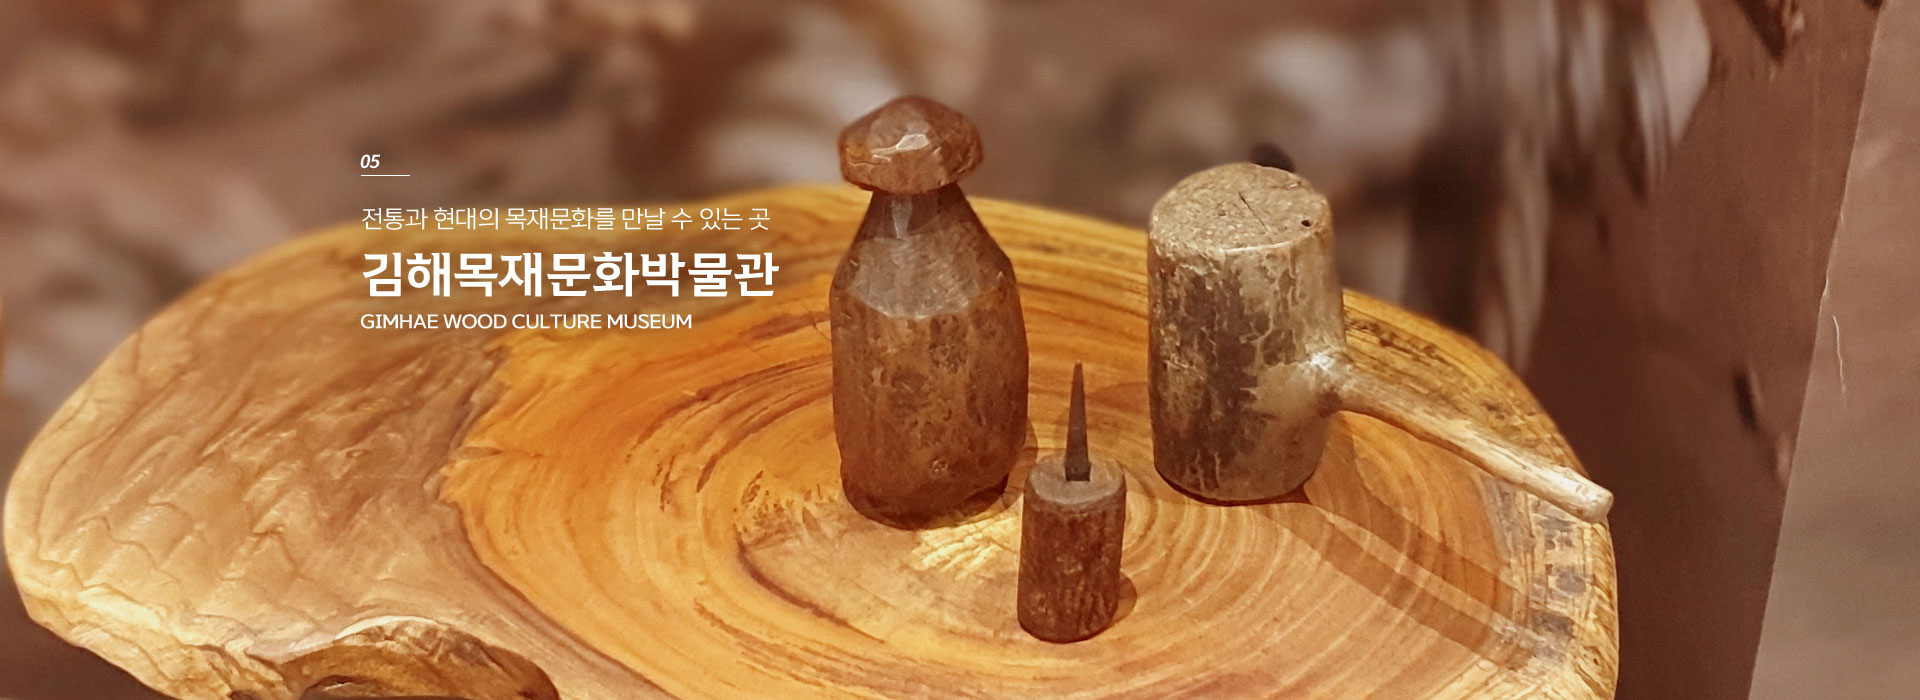 05. 전통과 현대의 목재문화를 만날 수 있는 곳. 김해목재문화박물관 GIMHAE WOOD CULTURE MUSEUM